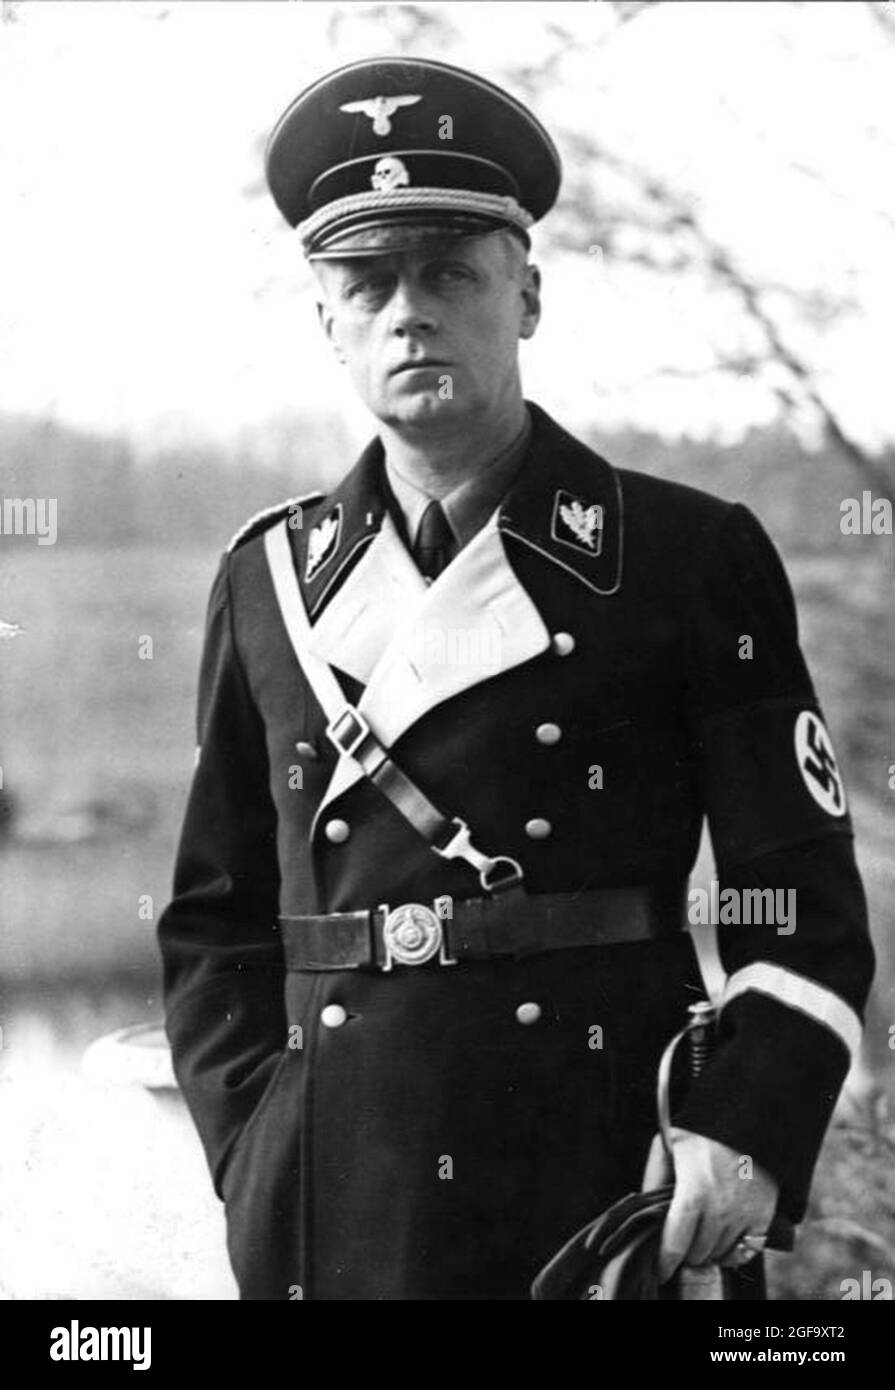 El líder y político nazi Joachim von Ribbentrop. Fue Ministro de Asuntos Exteriores de la nazi (Secretario de Asuntos Exteriores). Fue capturado en 1945, juzgado y ahorcado en Nuremberg en 1946. Crédito: Bundesarchiv Foto de stock